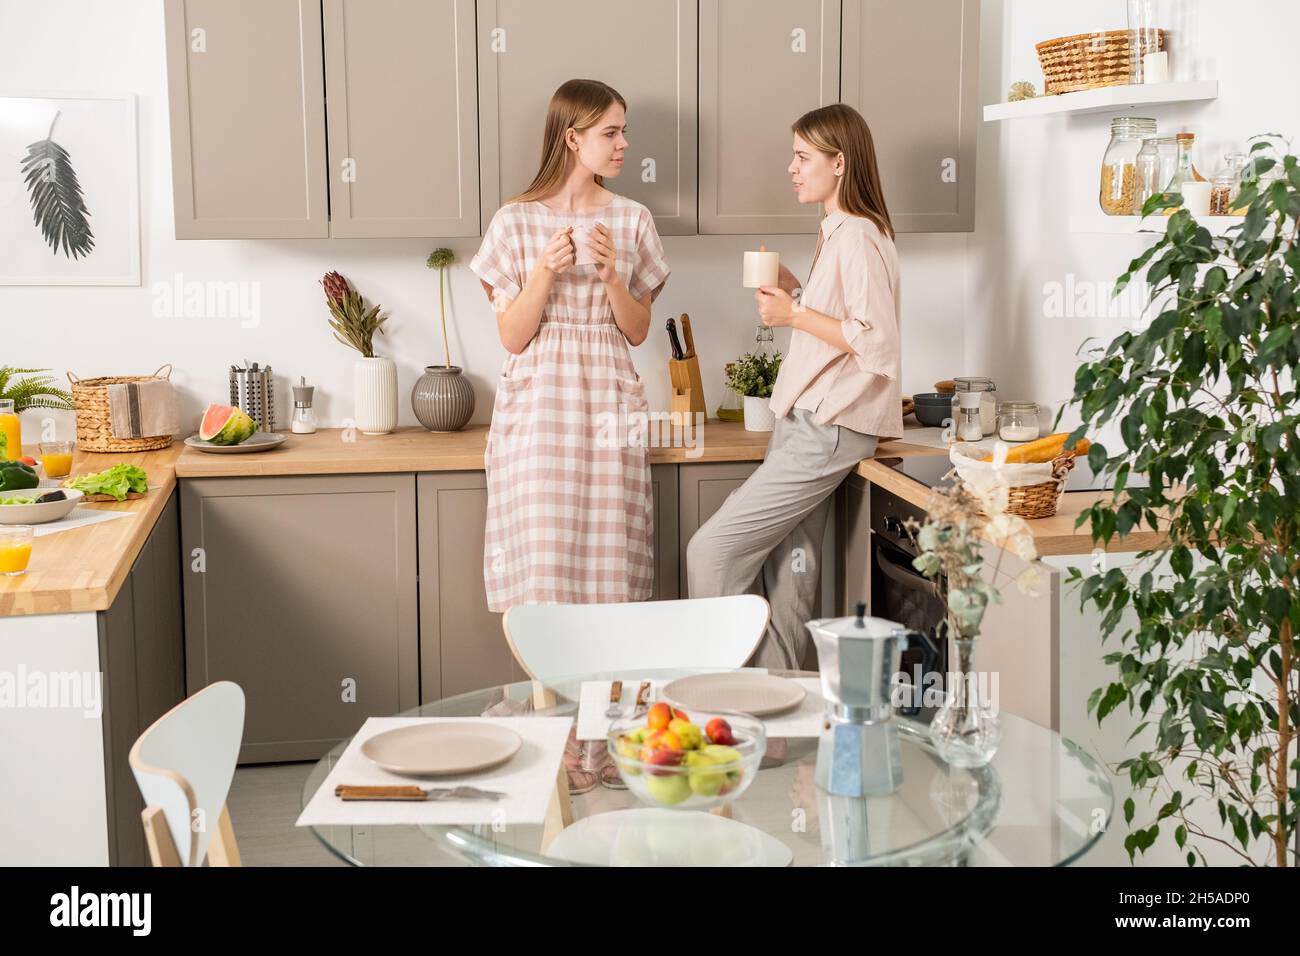 Zwei moderne Mädchen im Teenageralter in Casualwear diskutieren nach dem Frühstück über Pläne für ein Wochenende, während sie in der Küche einen Drink genießen Stockfoto